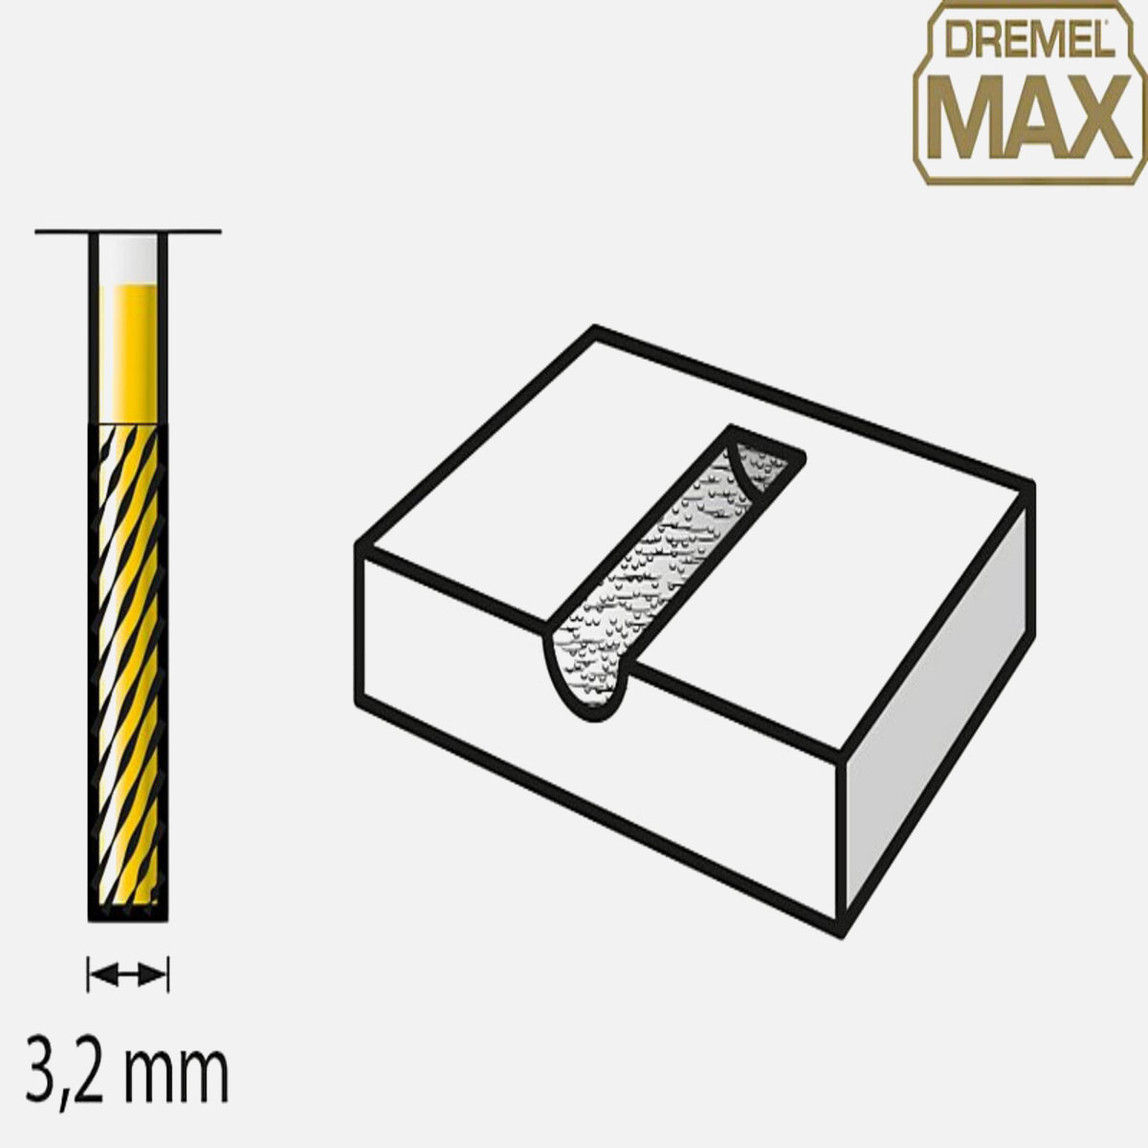    Dremel Max Tungsten Karbit Freze(9901DM) 